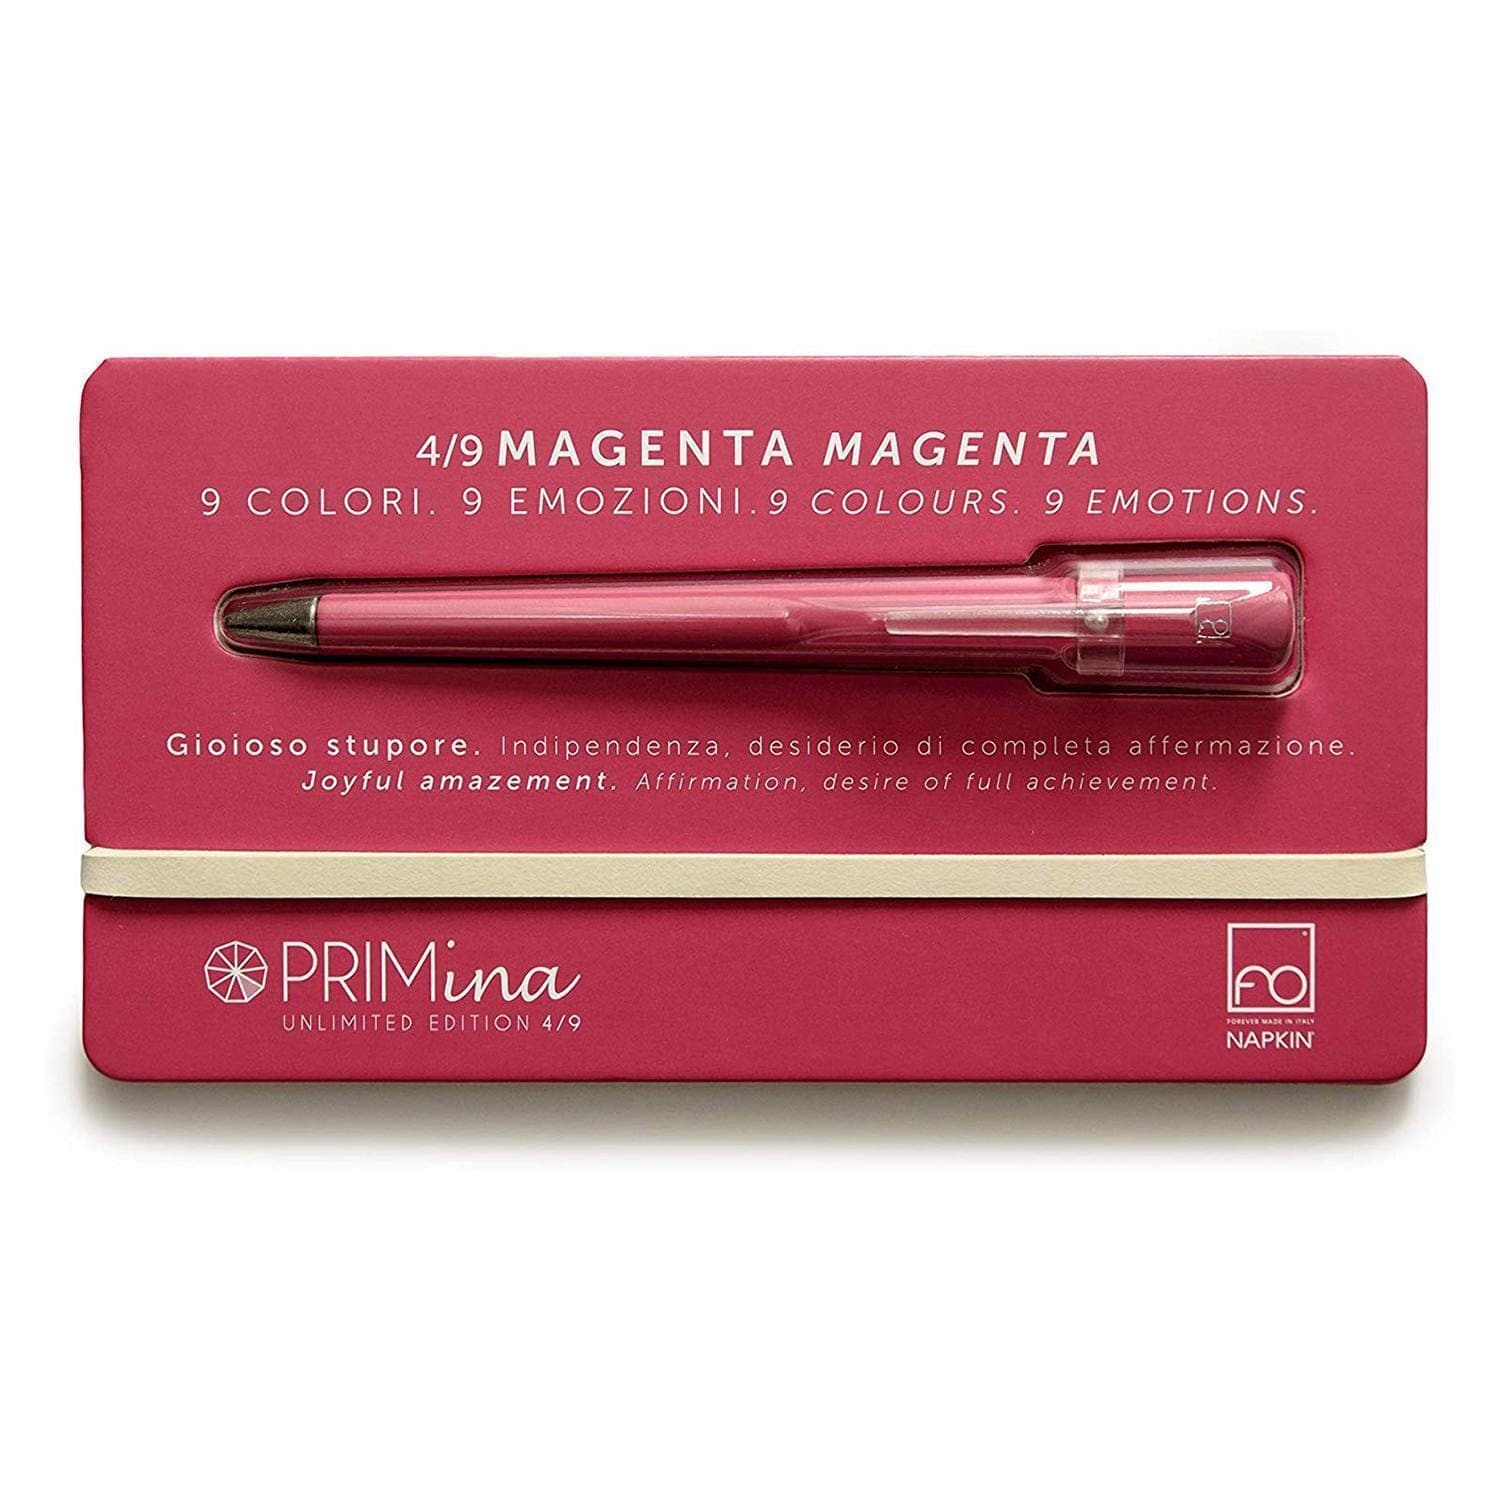 Pininfarina Forever Primina Magenta Inkless Pen - NPKRE01550 - Jashanmal Home